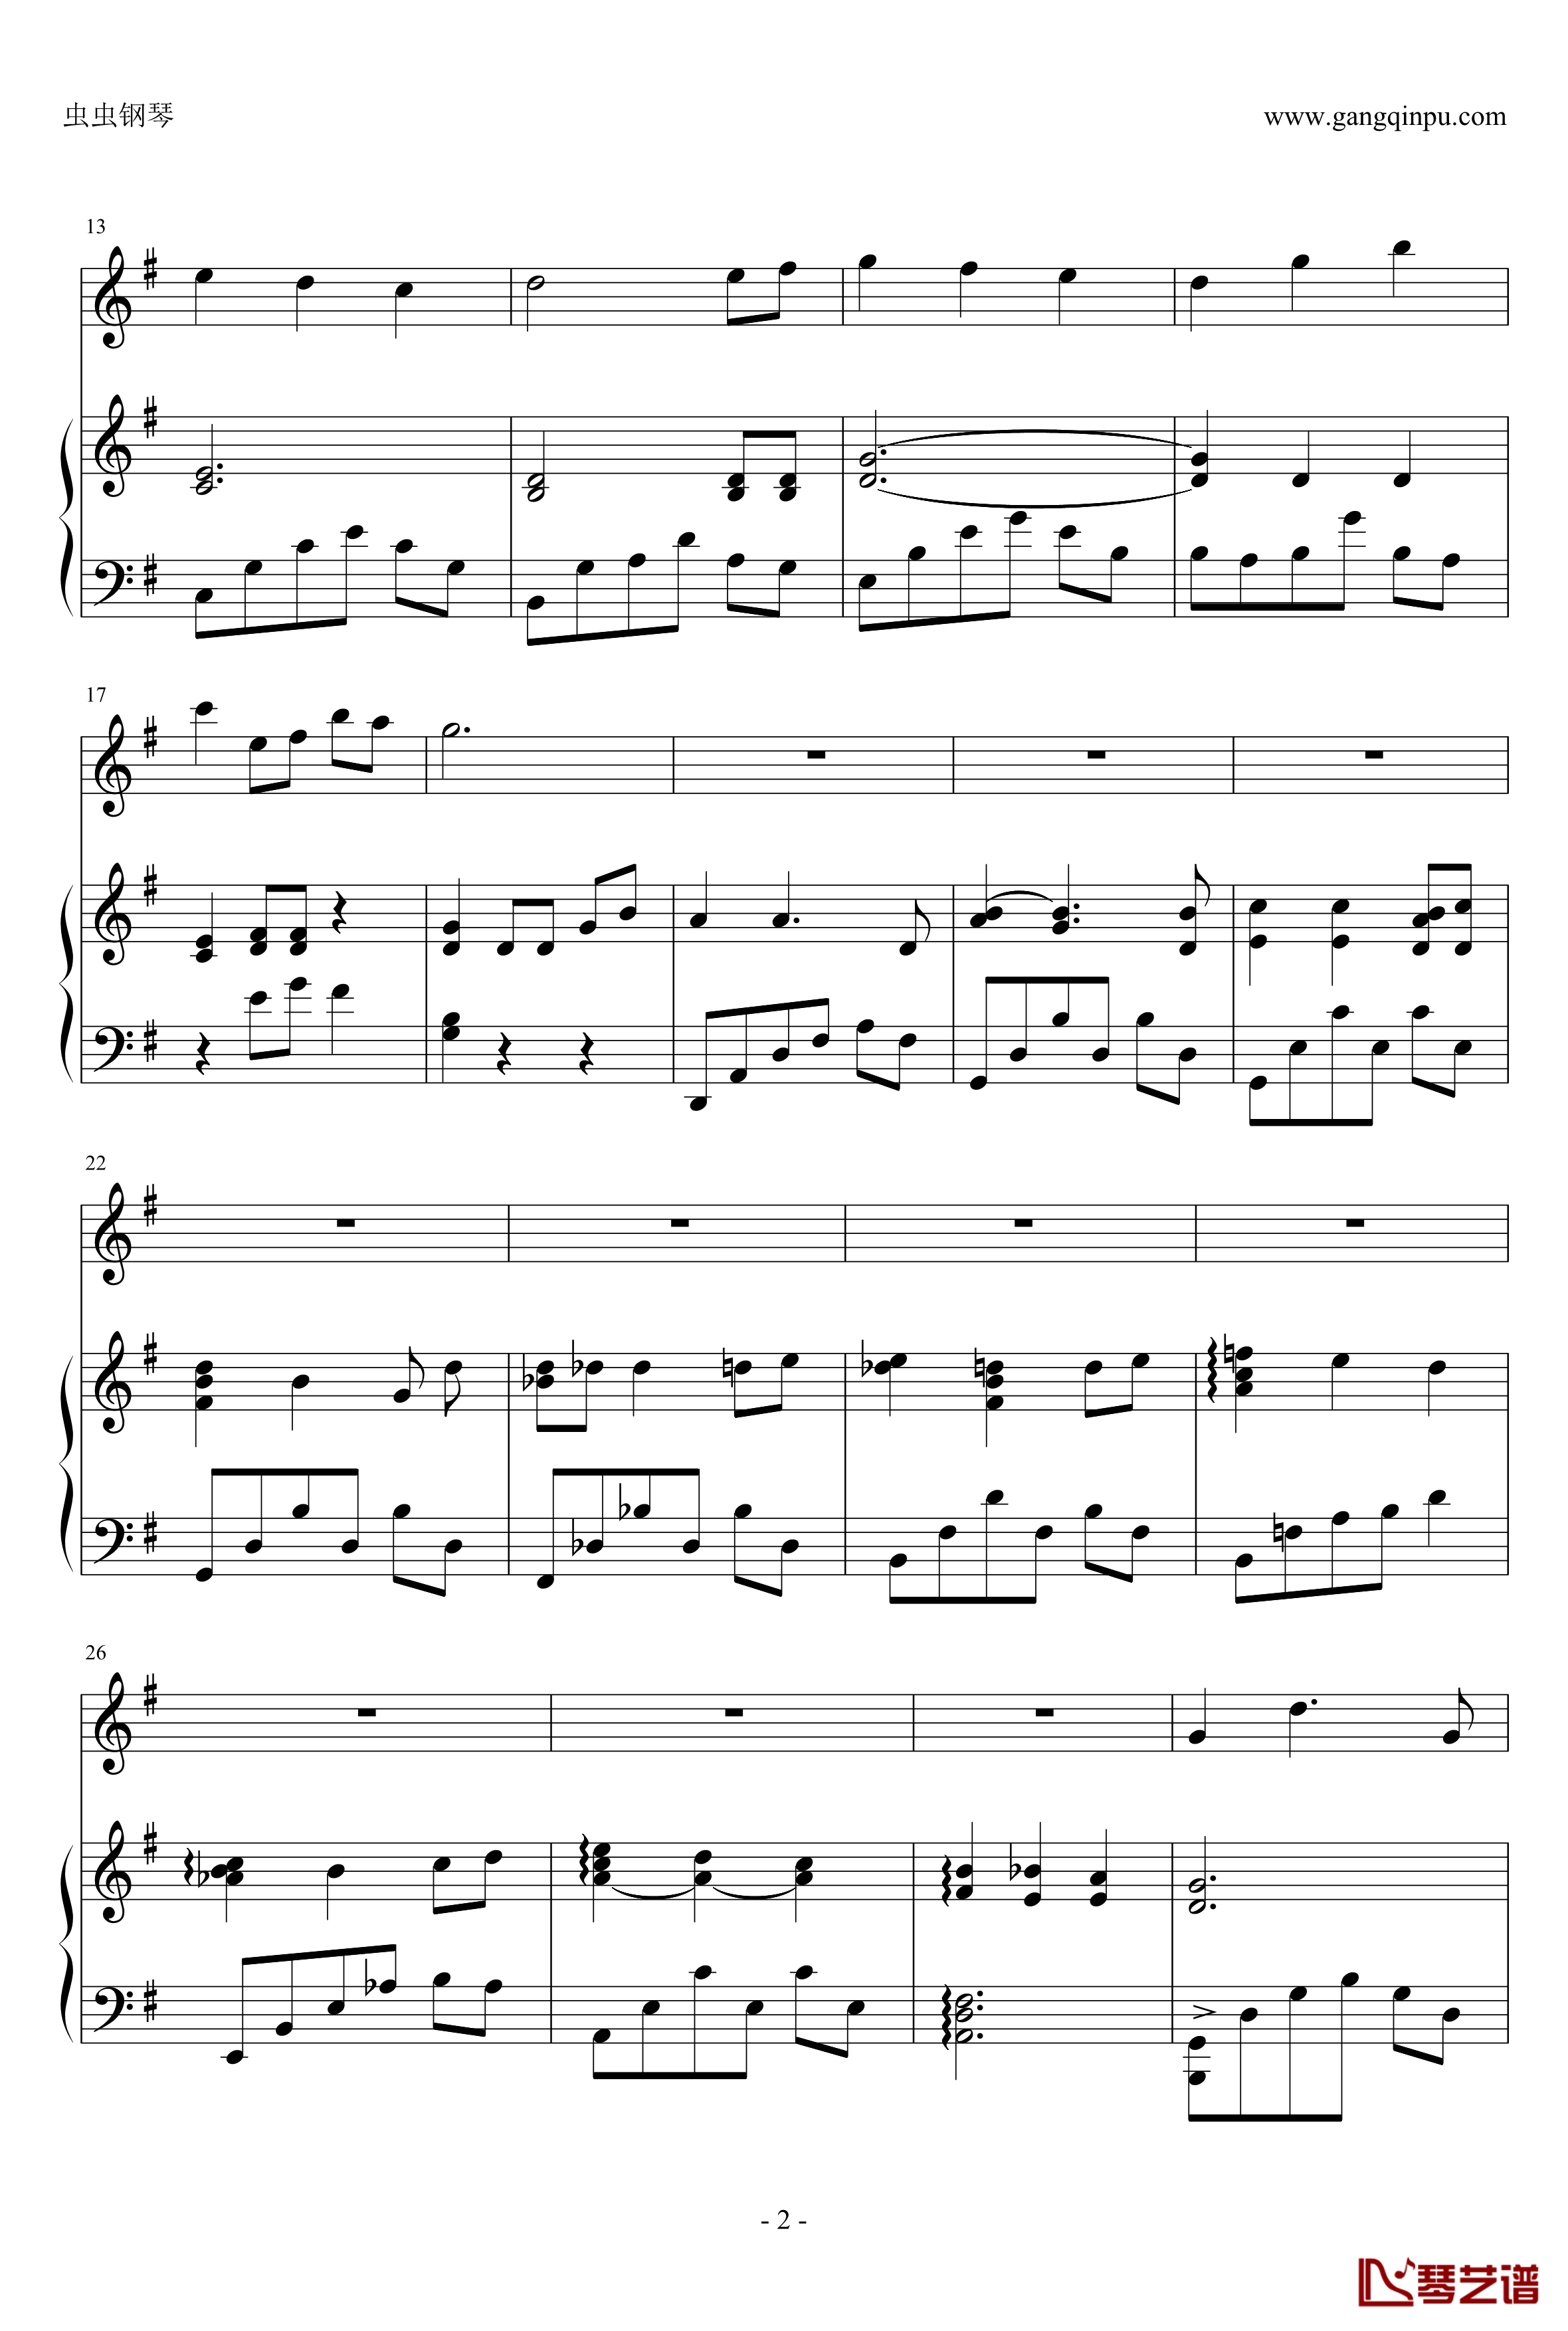 千寻的圆舞曲钢琴谱-钢琴+小提琴版-千与千寻